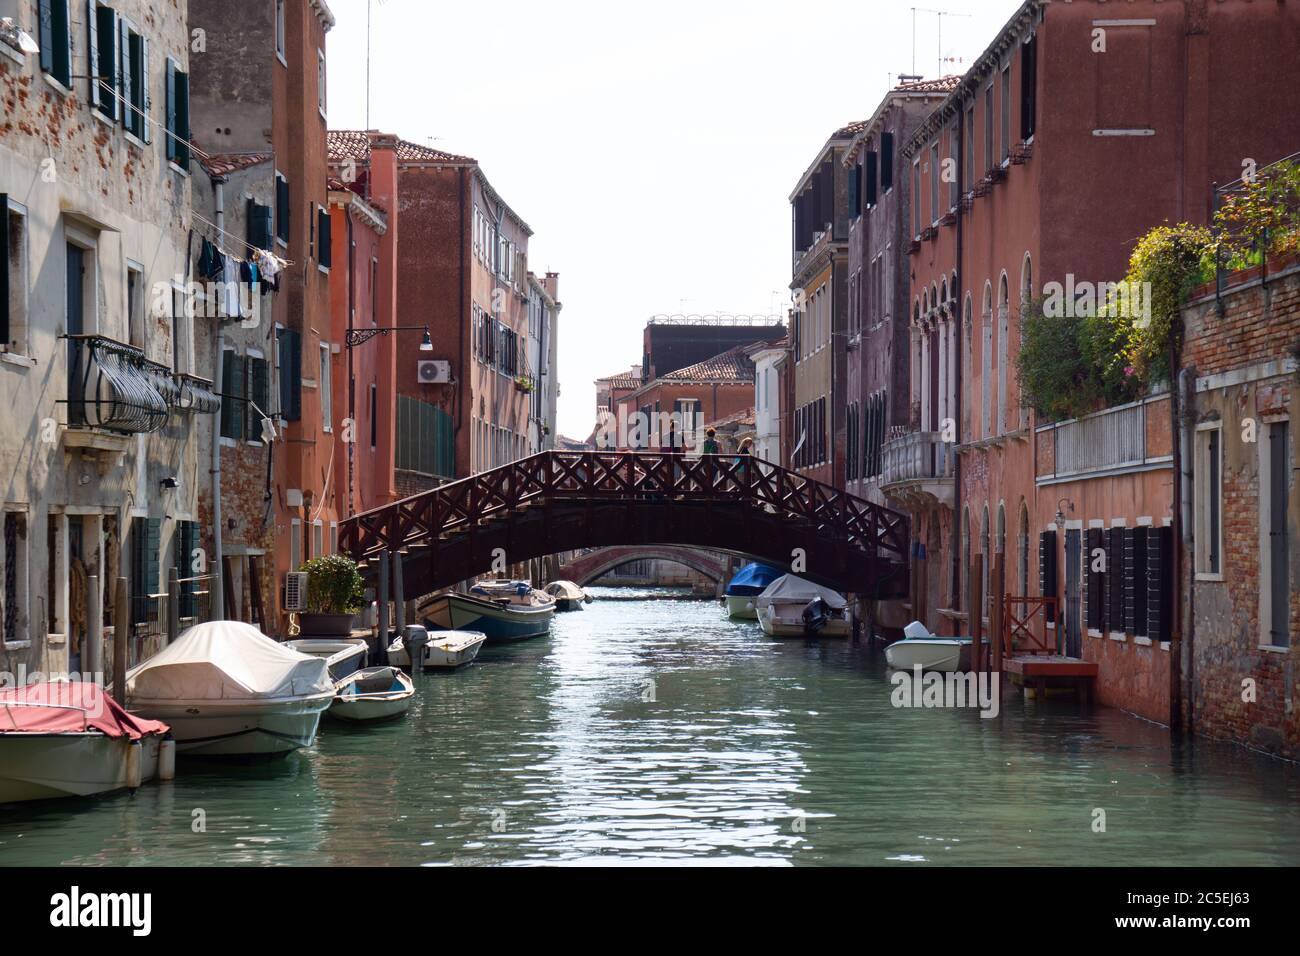 Oct. 1, 2019 - Venice, Italy: views of the city of Venice Stock Photo